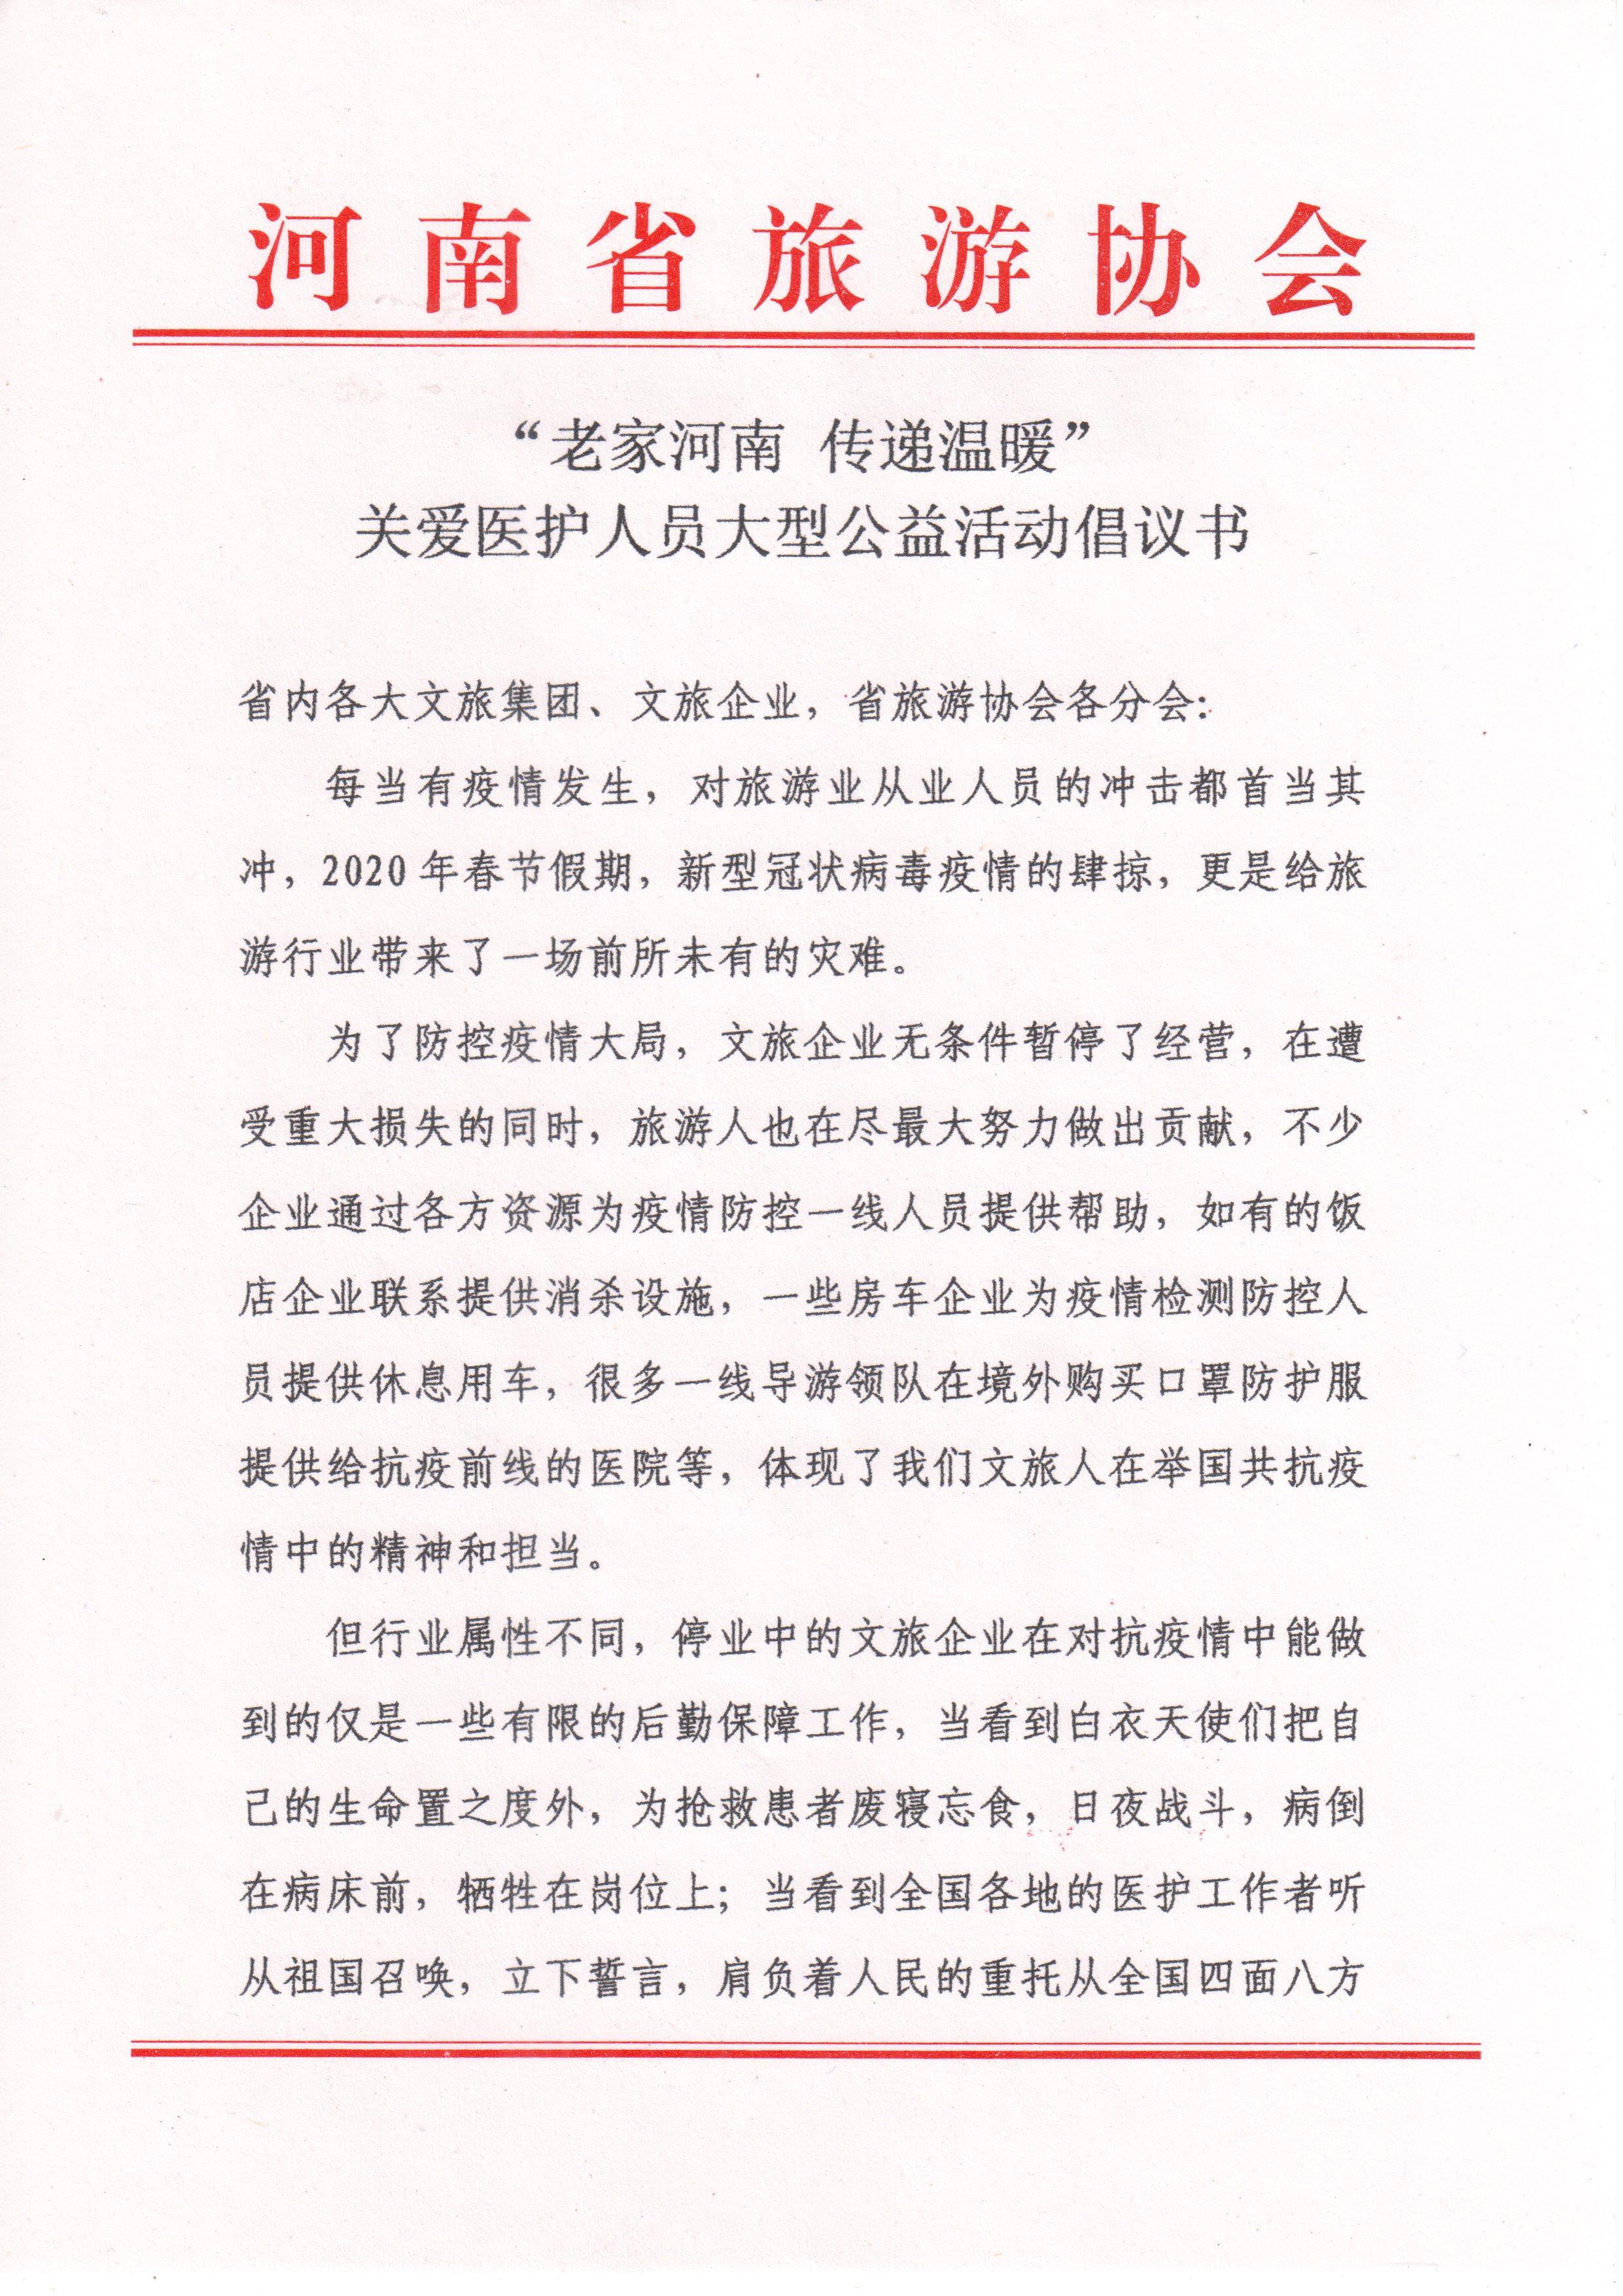 河南省旅游协会颁布“老家河南 传递温暖”关爱医护人员大型公益活动倡议书